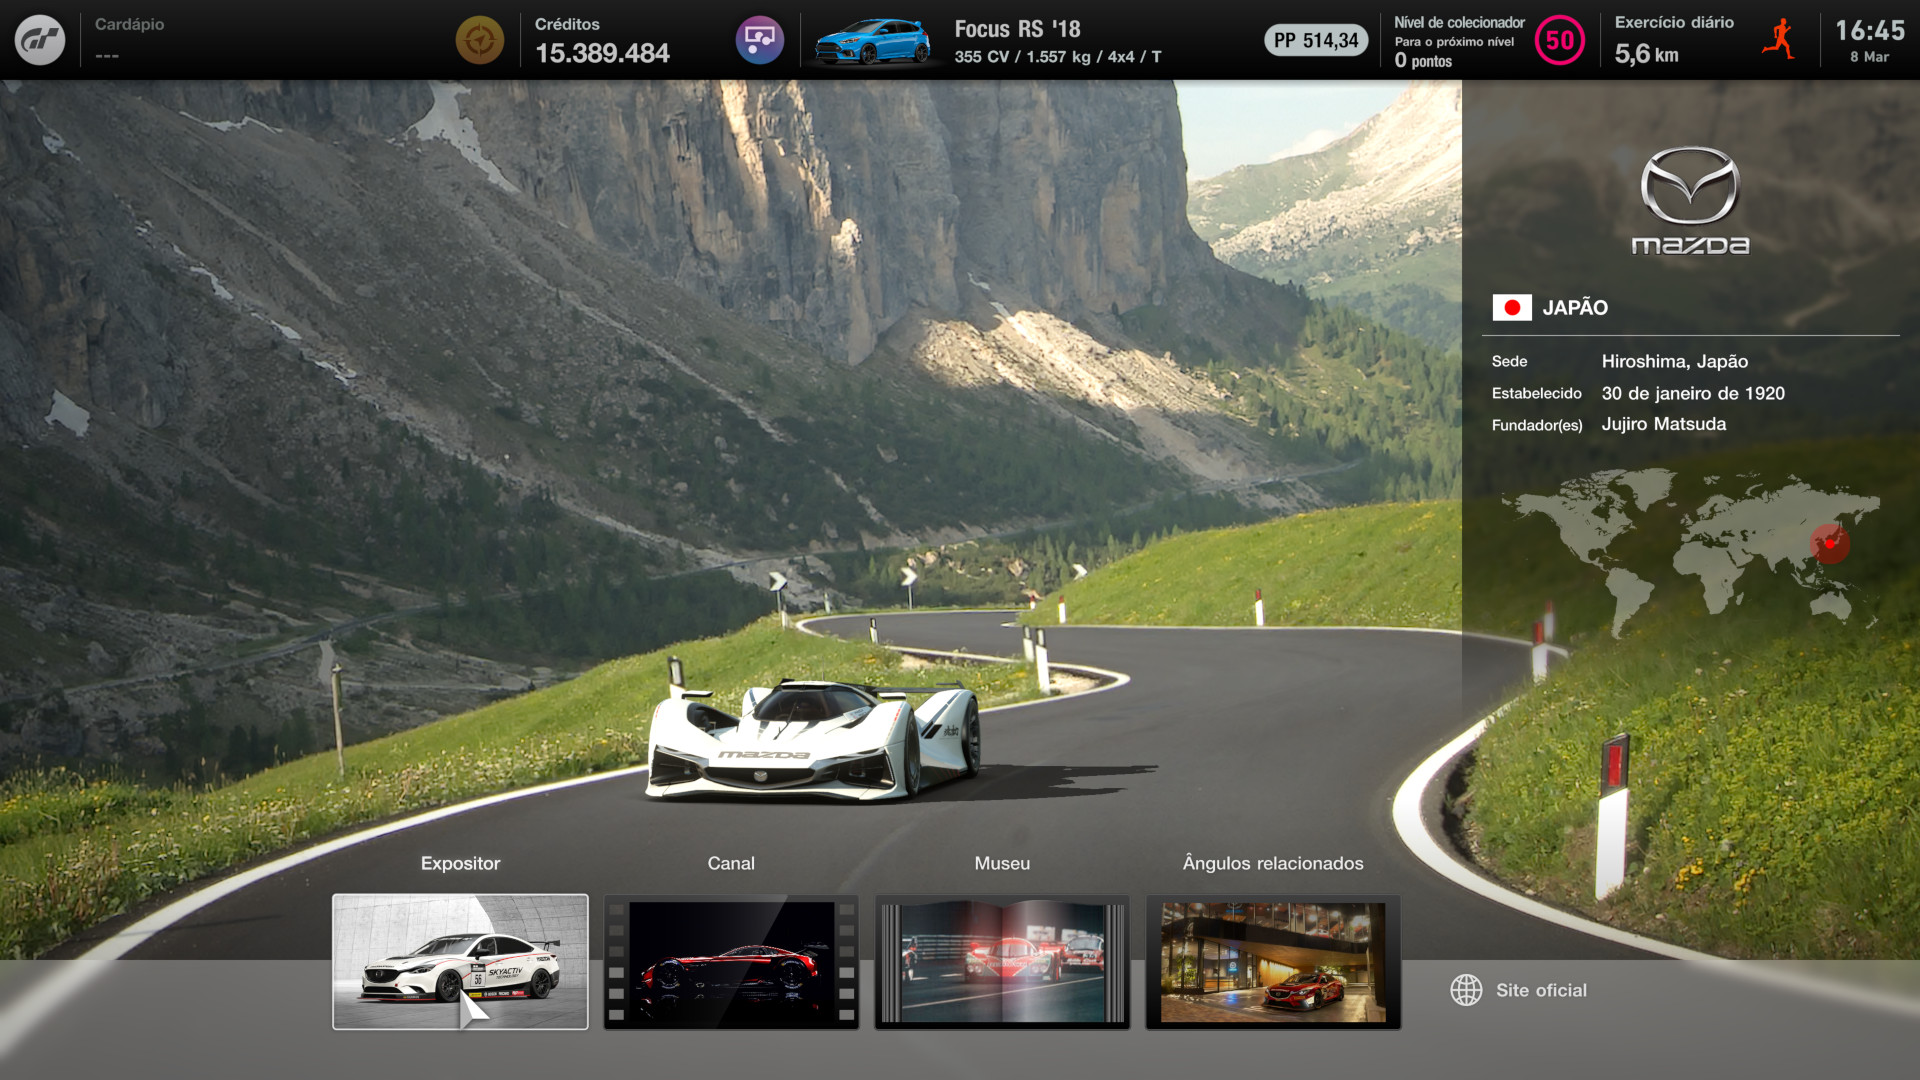 Bônus de pré-venda de Gran Turismo 7 são revelados com 3 carros especiais